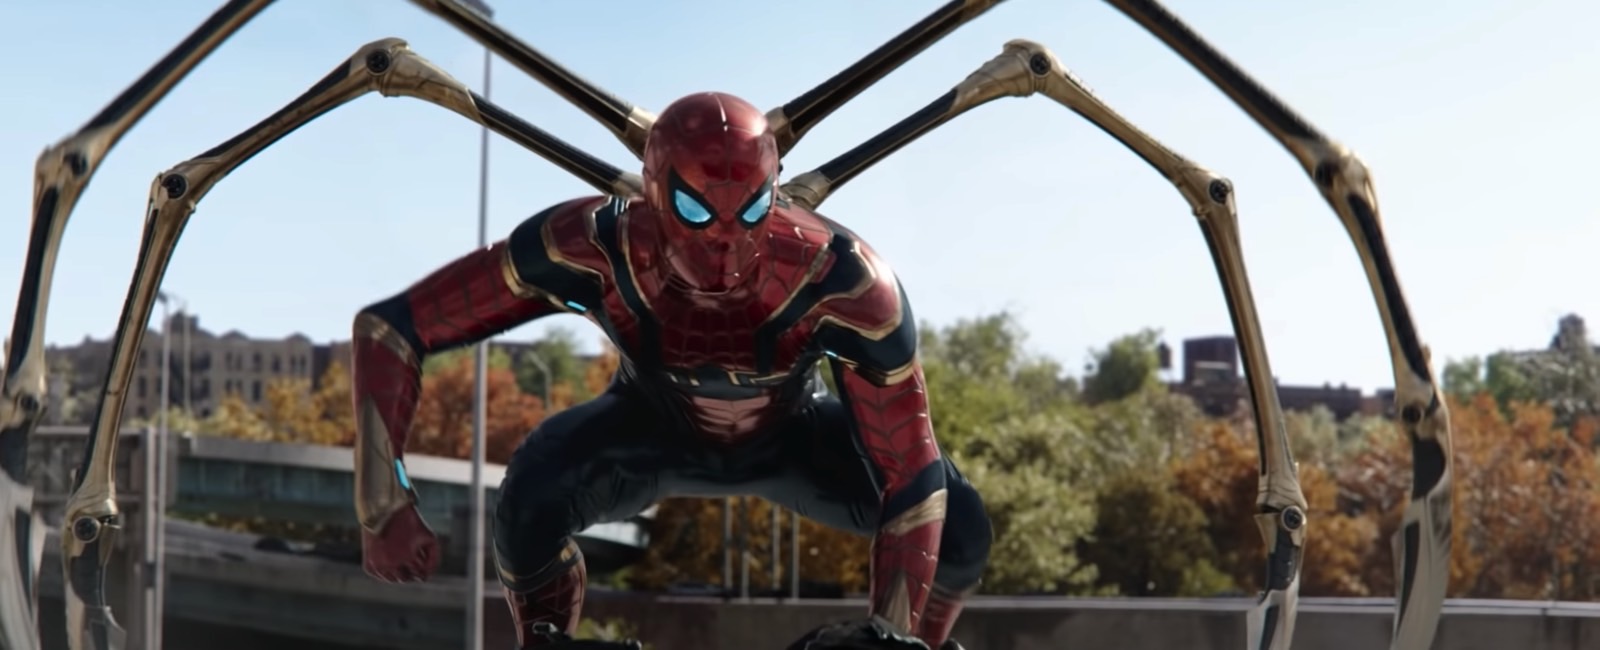 Spider-Man in No Way Home trailer 2